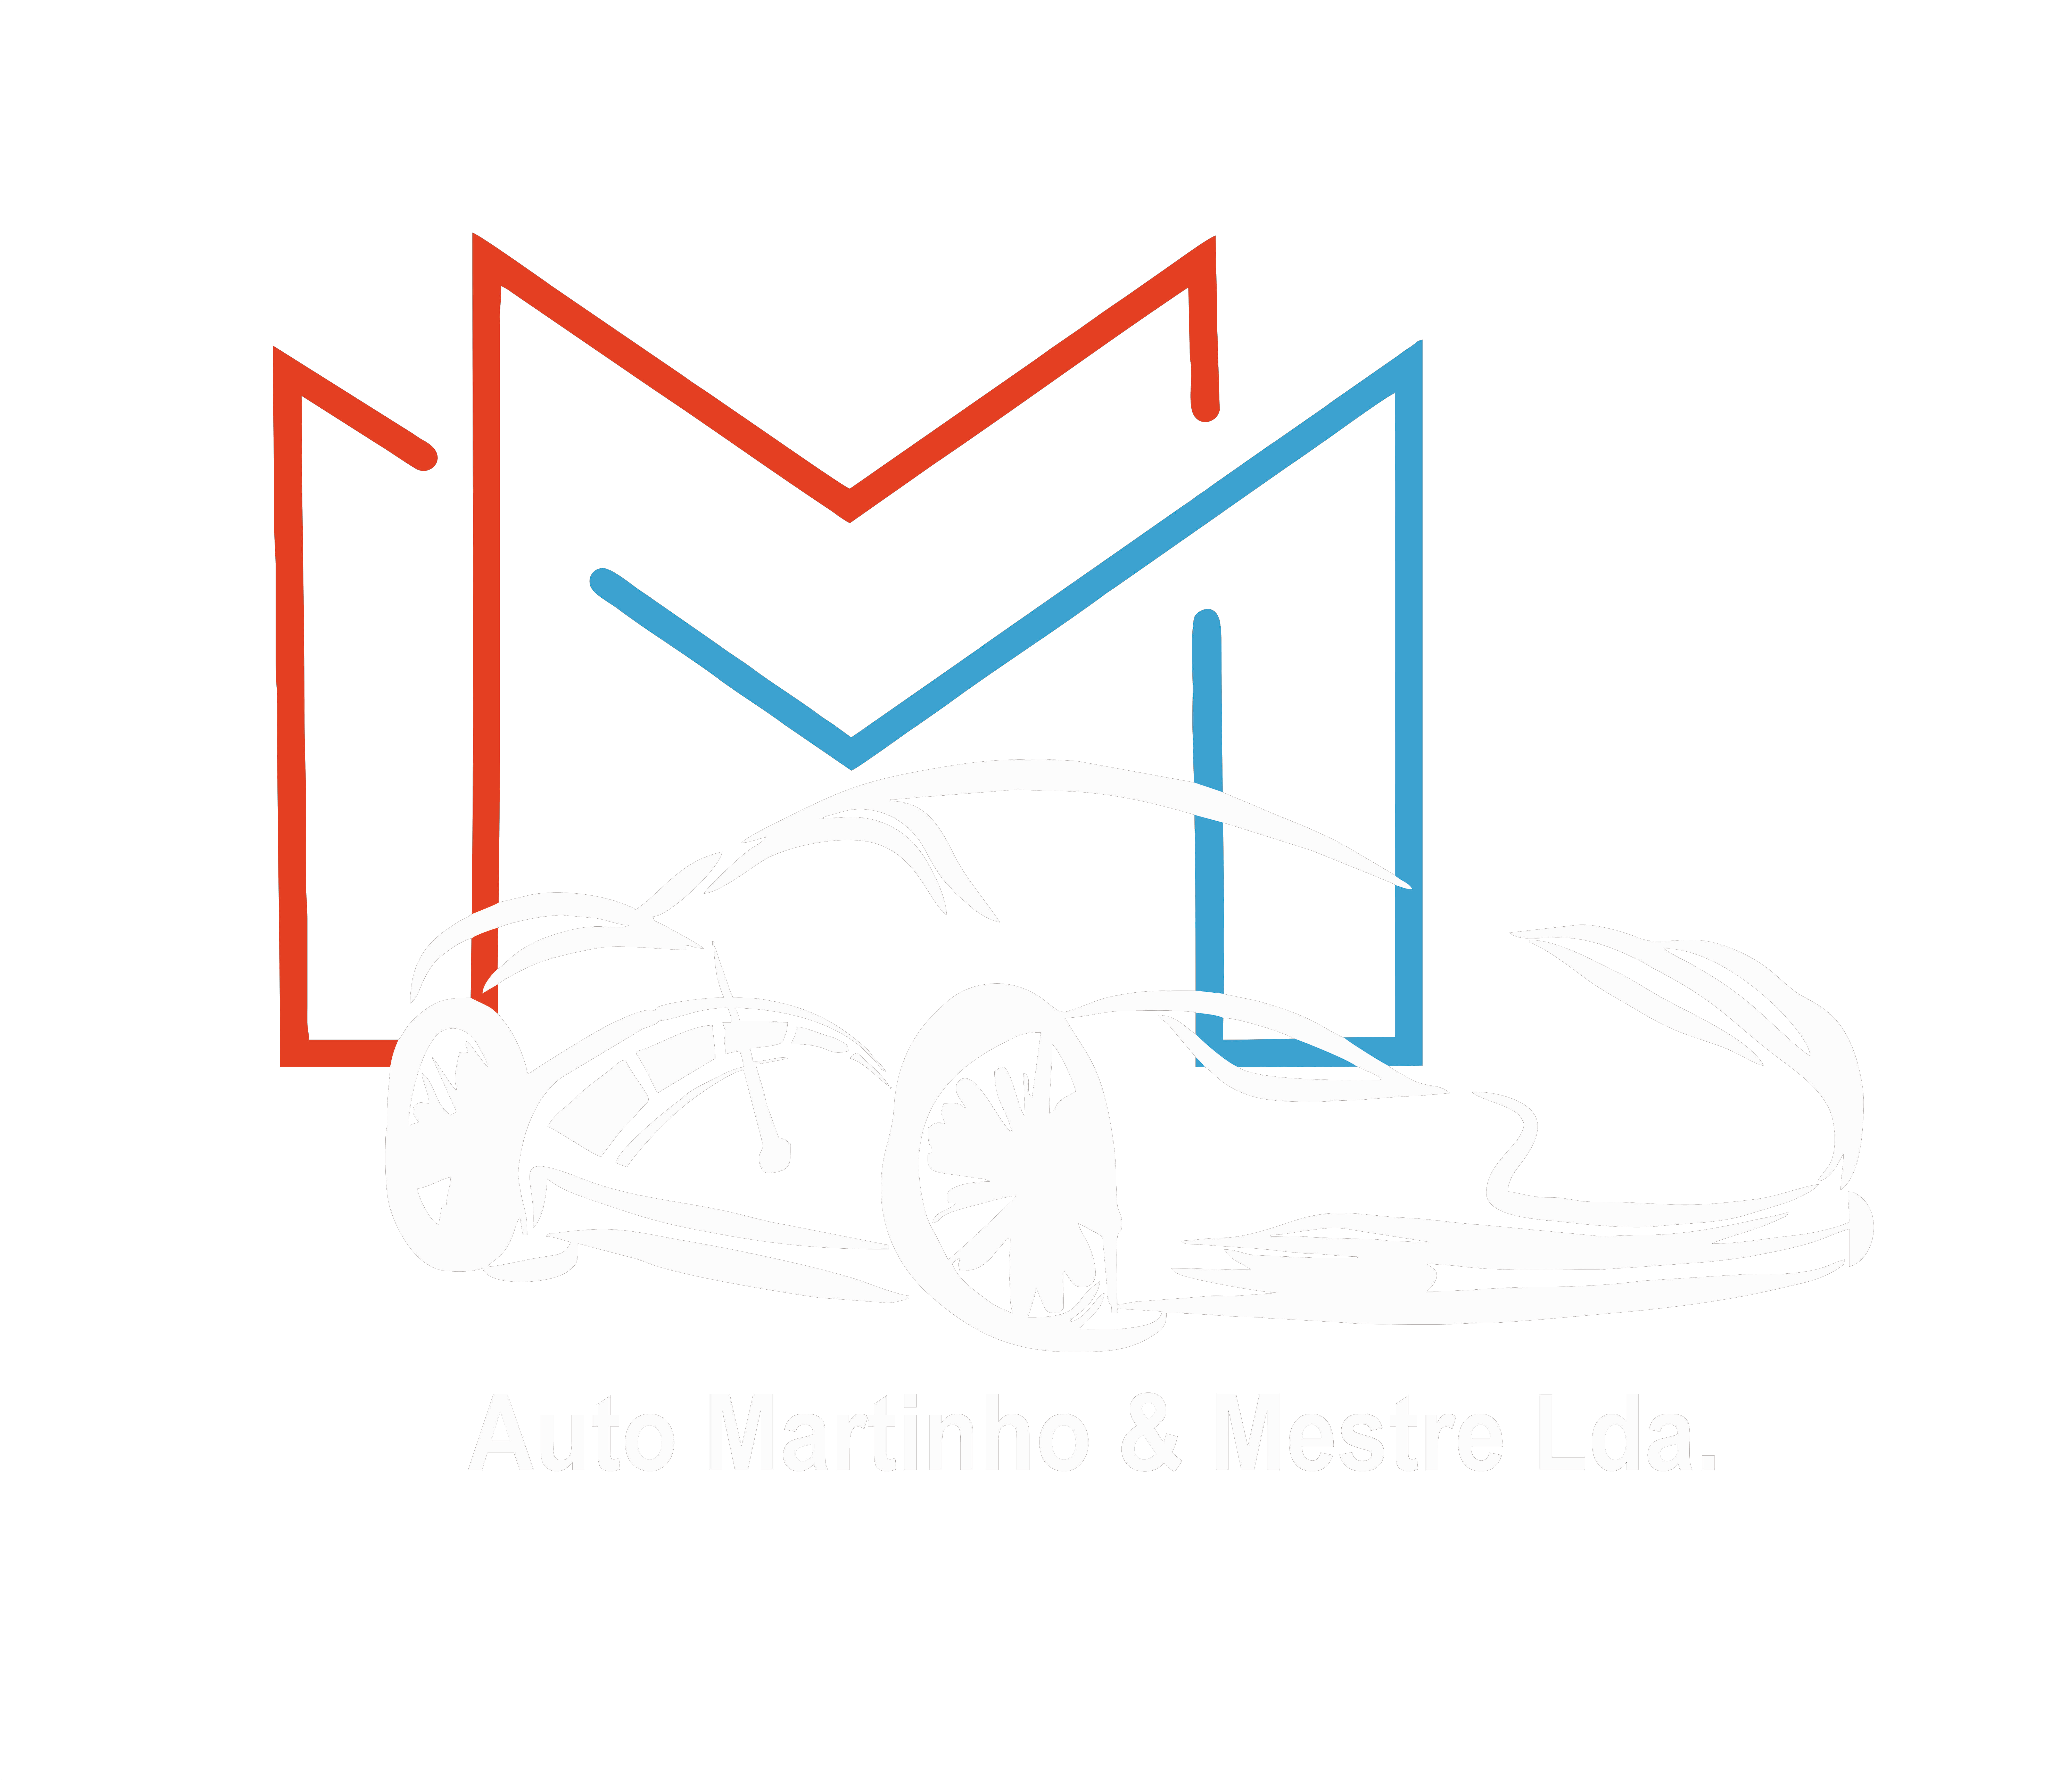 Auto Martinho & Mestre